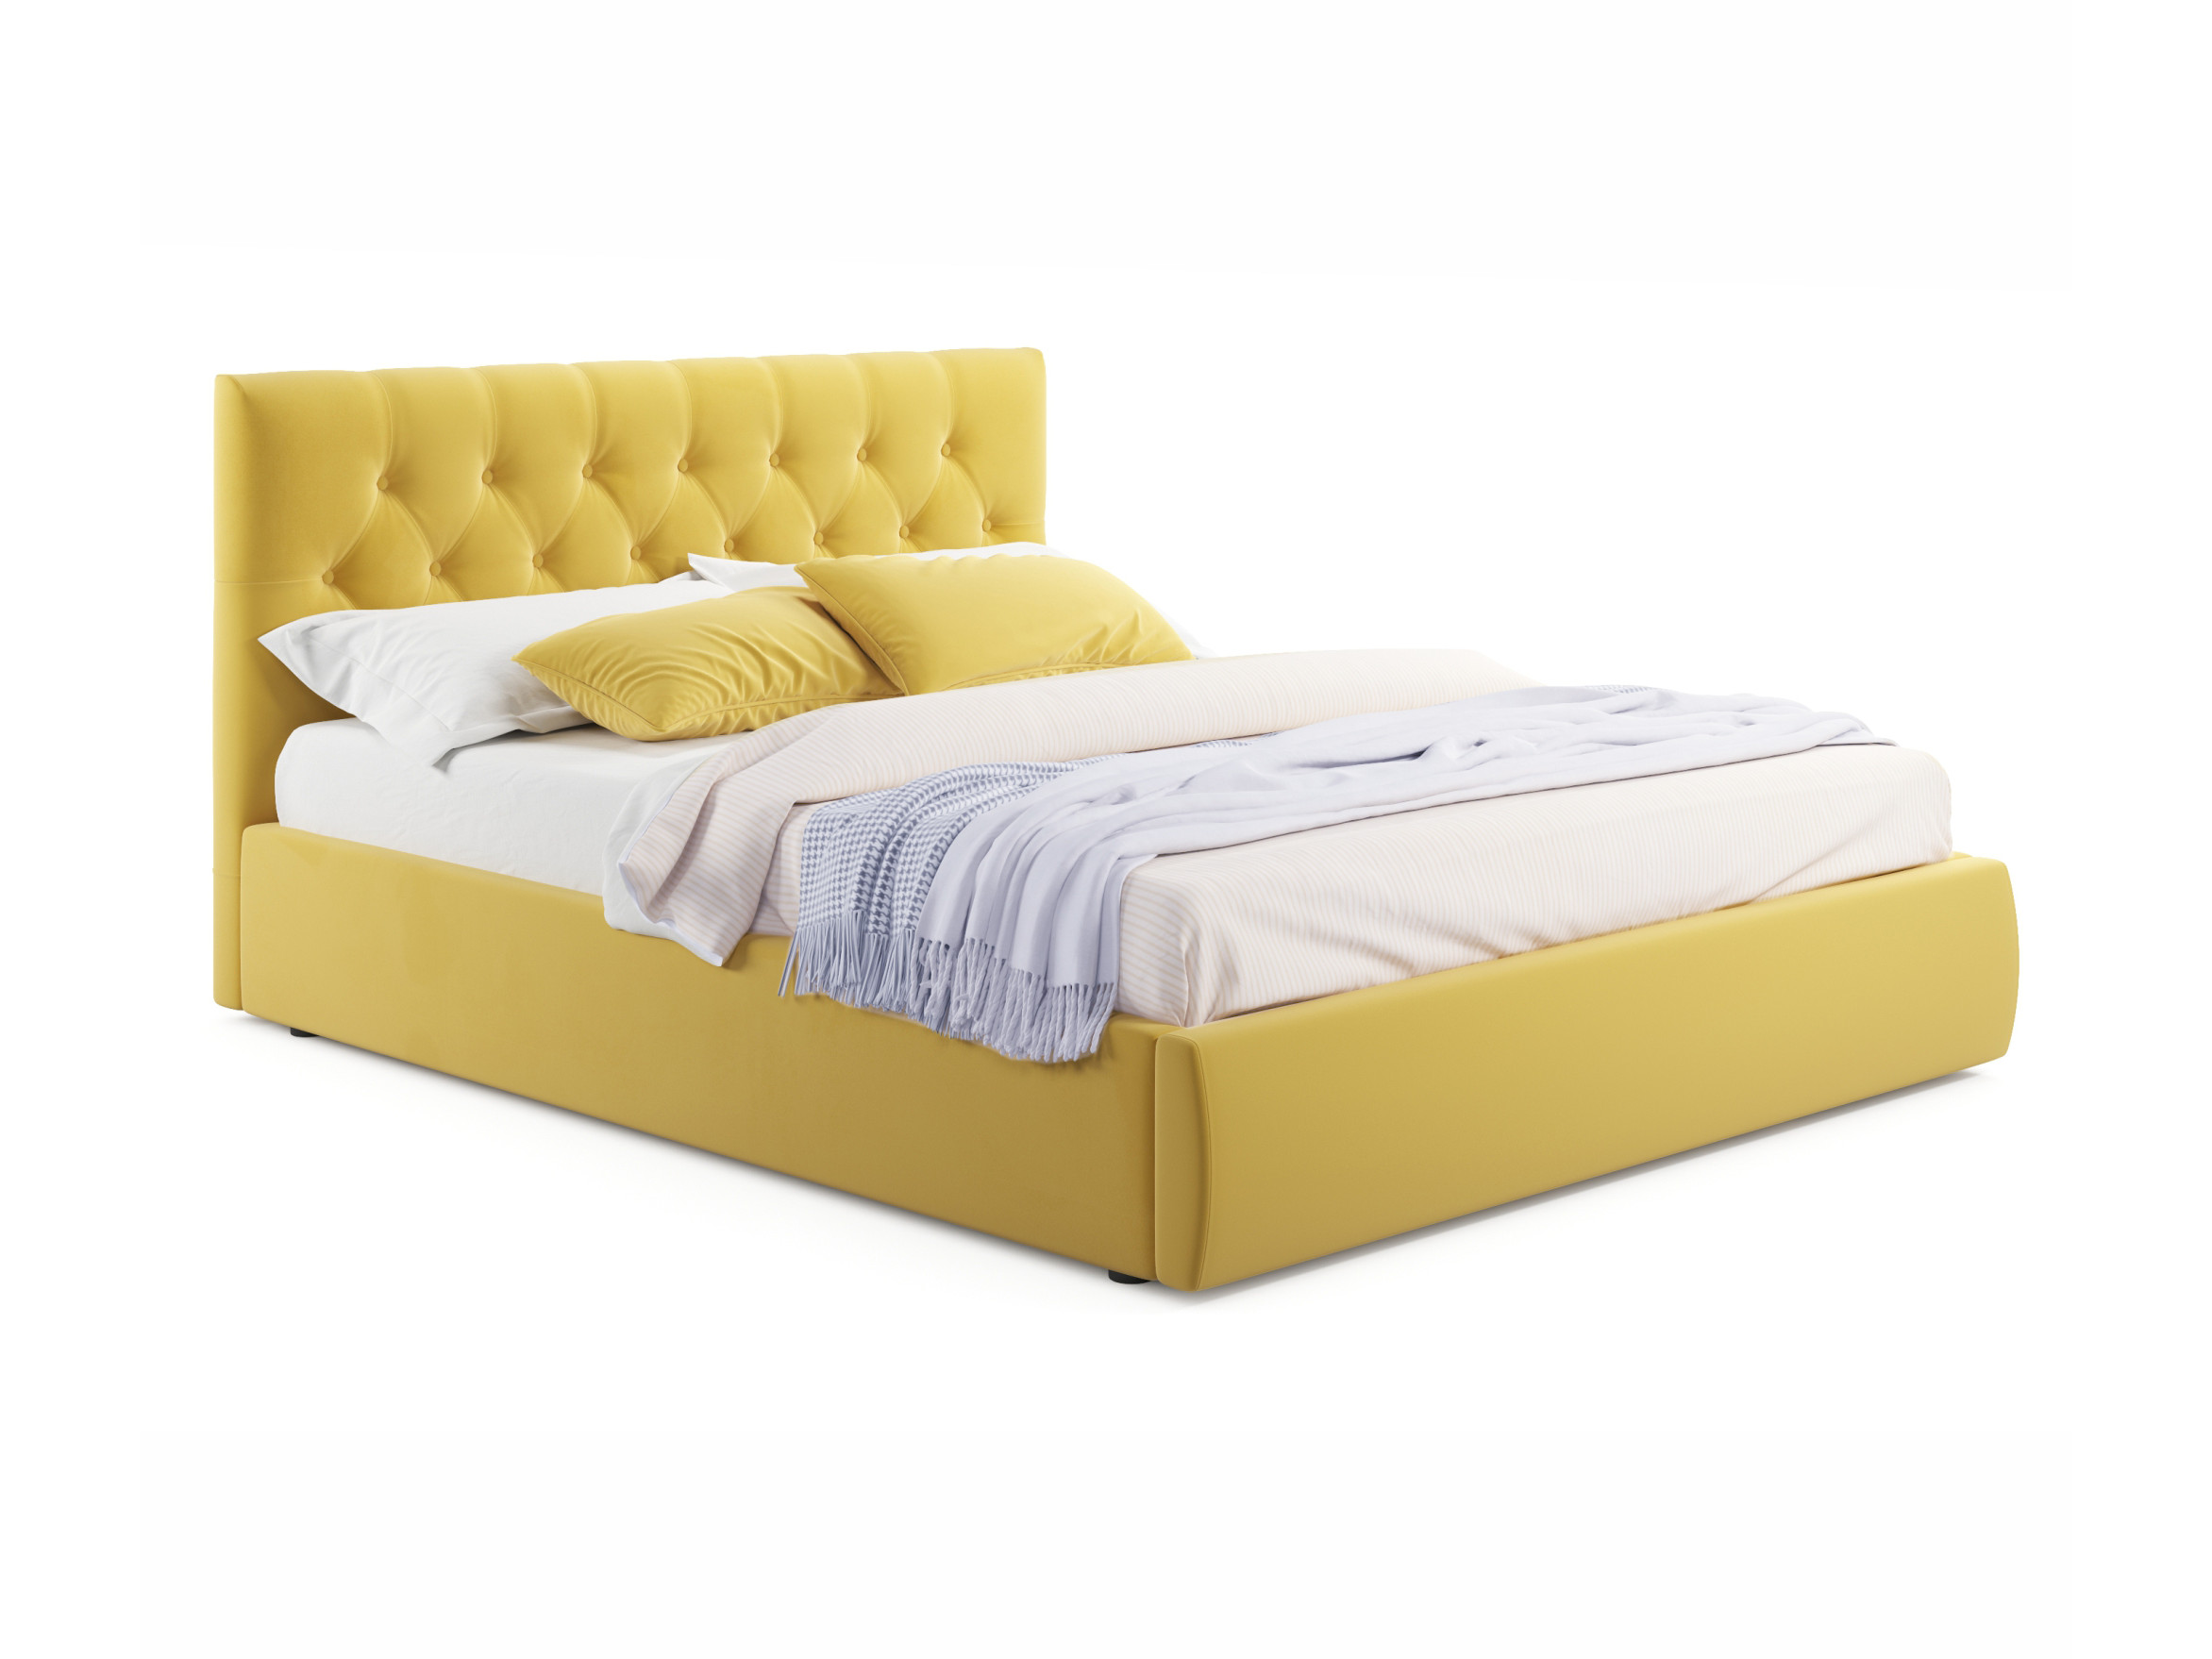 Мягкая кровать Verona 1600 желтая с ортопедическим основанием желтый, Желтый, Велюр, ДСП мягкая кровать ameli 1600 желтая с ортопедическим основанием желтый желтый велюр дсп